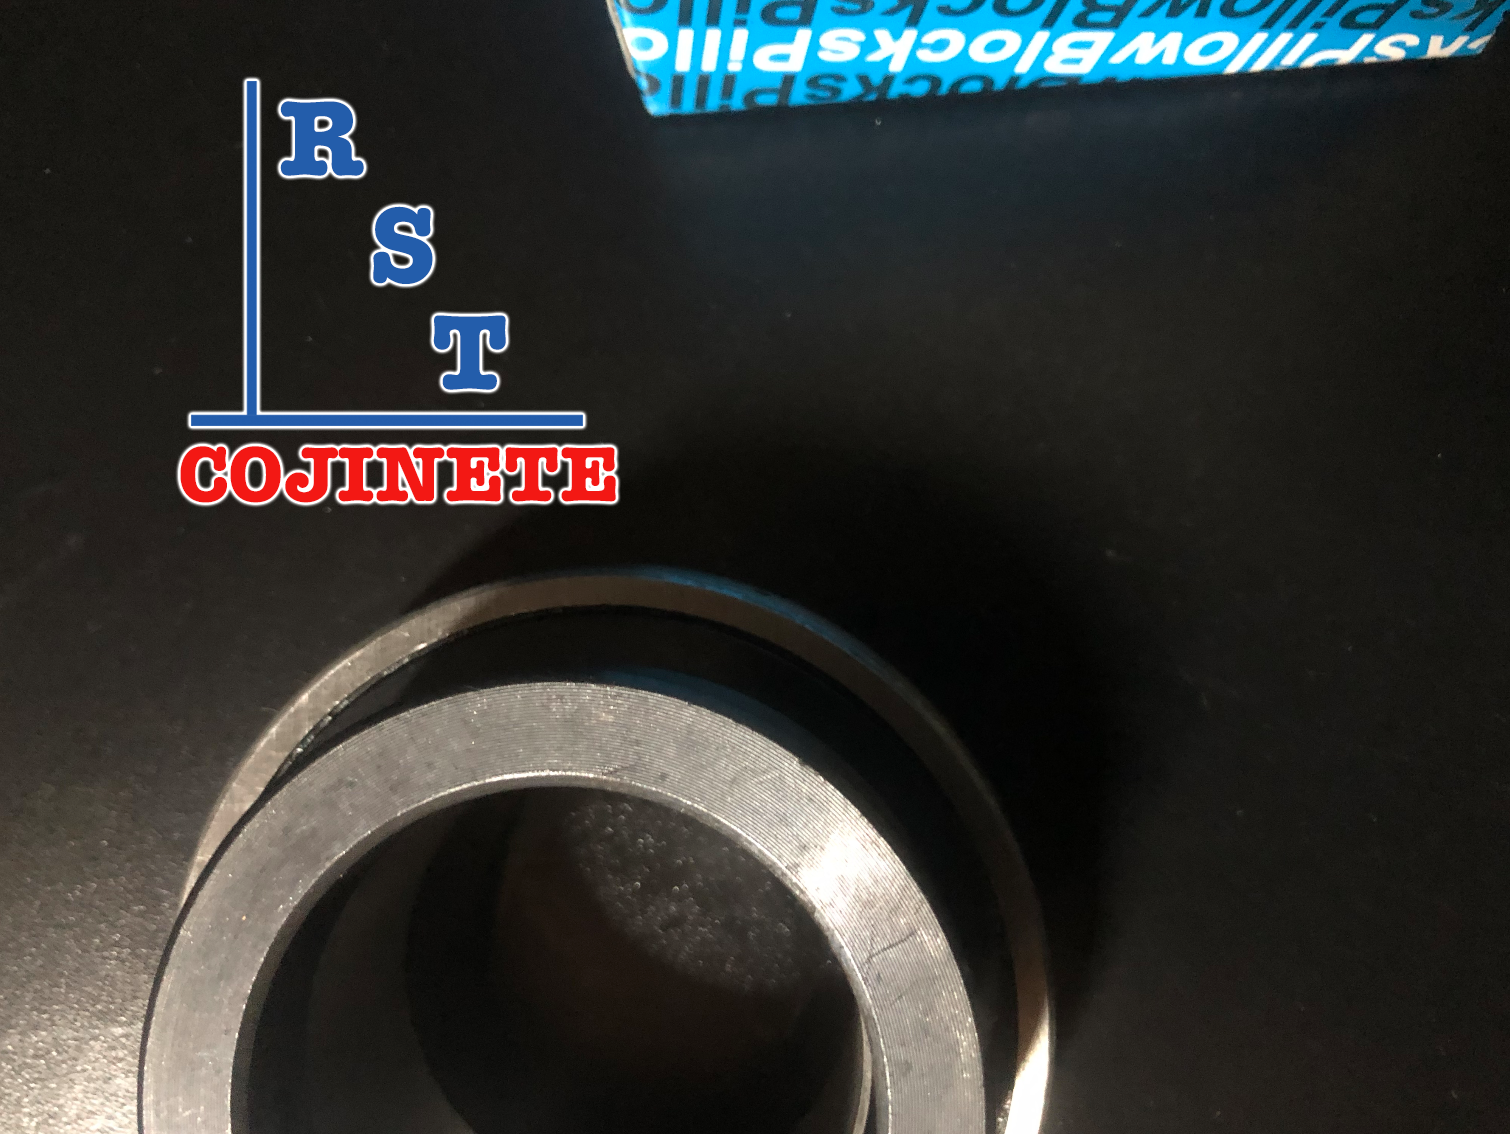 Rodamiento SA204-12 | Cojinete para chumaceras con eje de ¾ con respaldo plano y anillo excéntrico